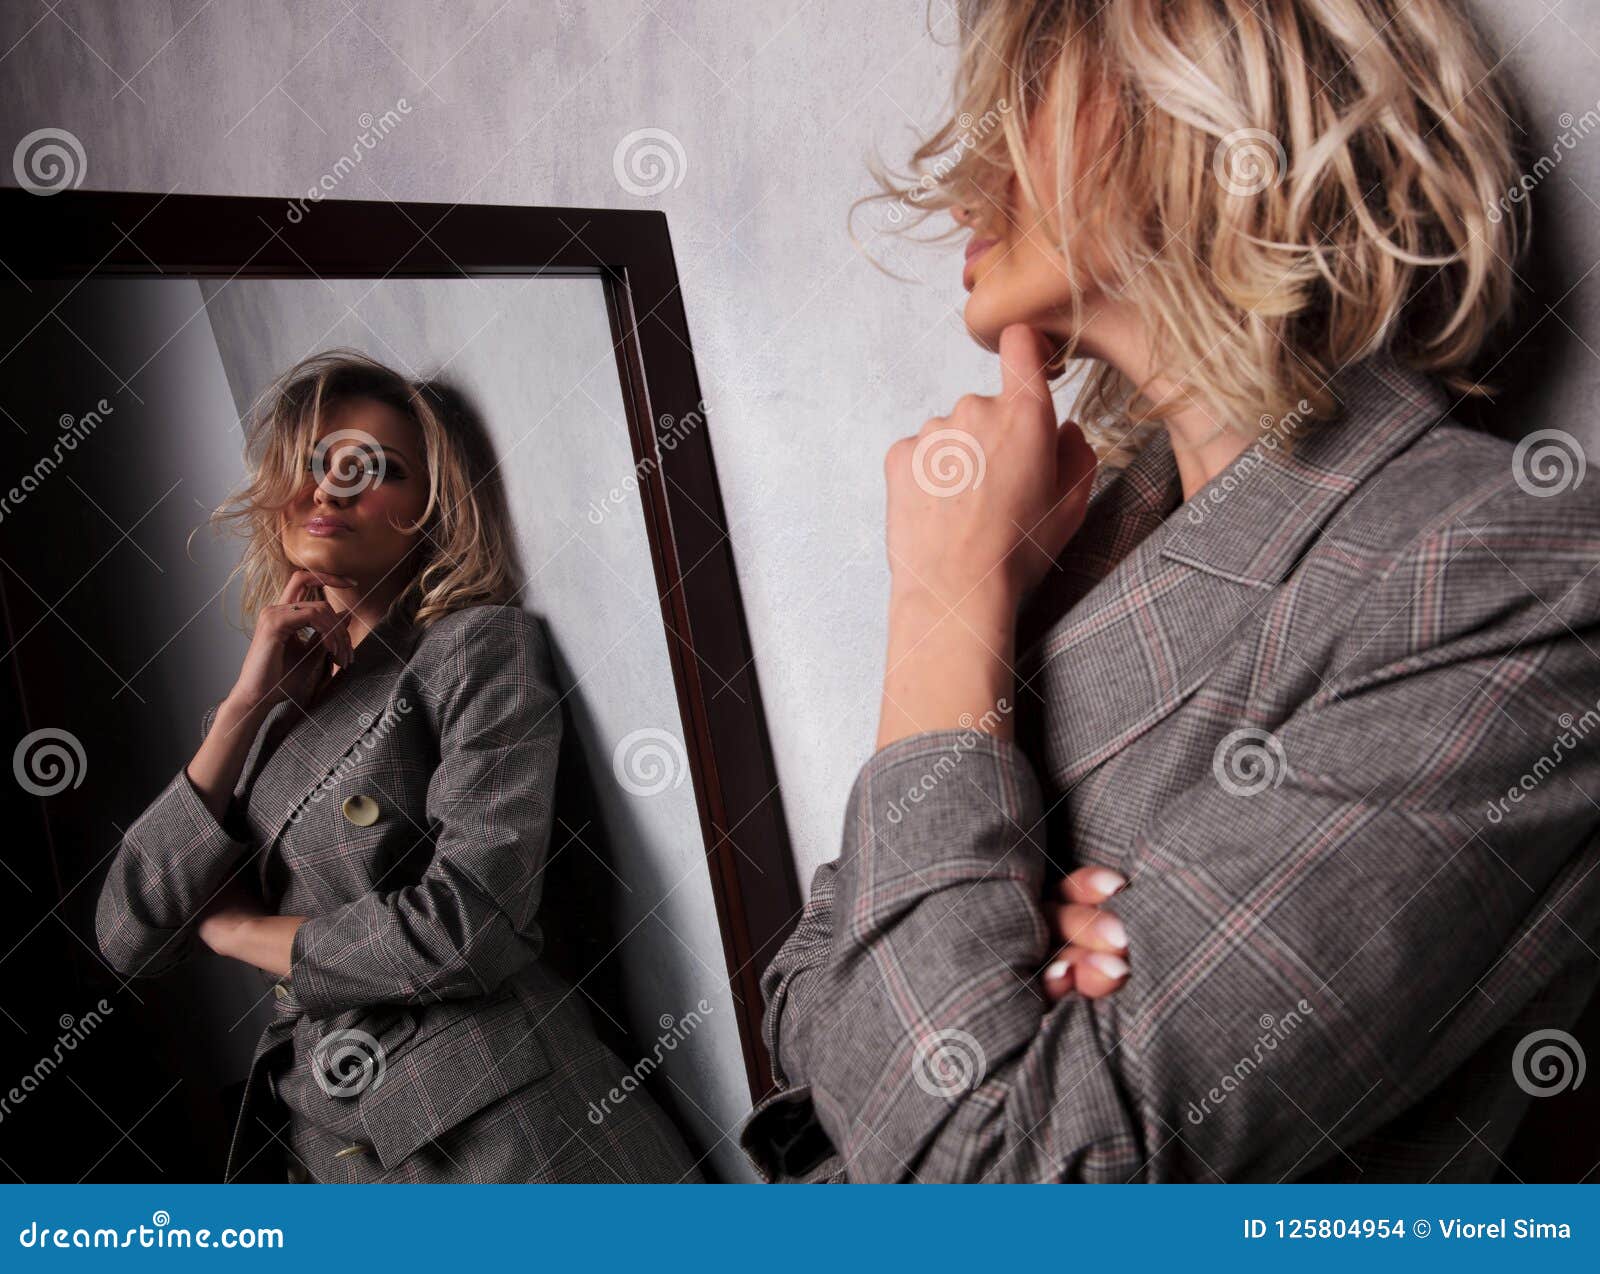 Грязные разговоры телки. Отражение женщины в зеркале. Блондинка в сером. Блондинка в зеркальце. Женщина у зеркала сбоку.